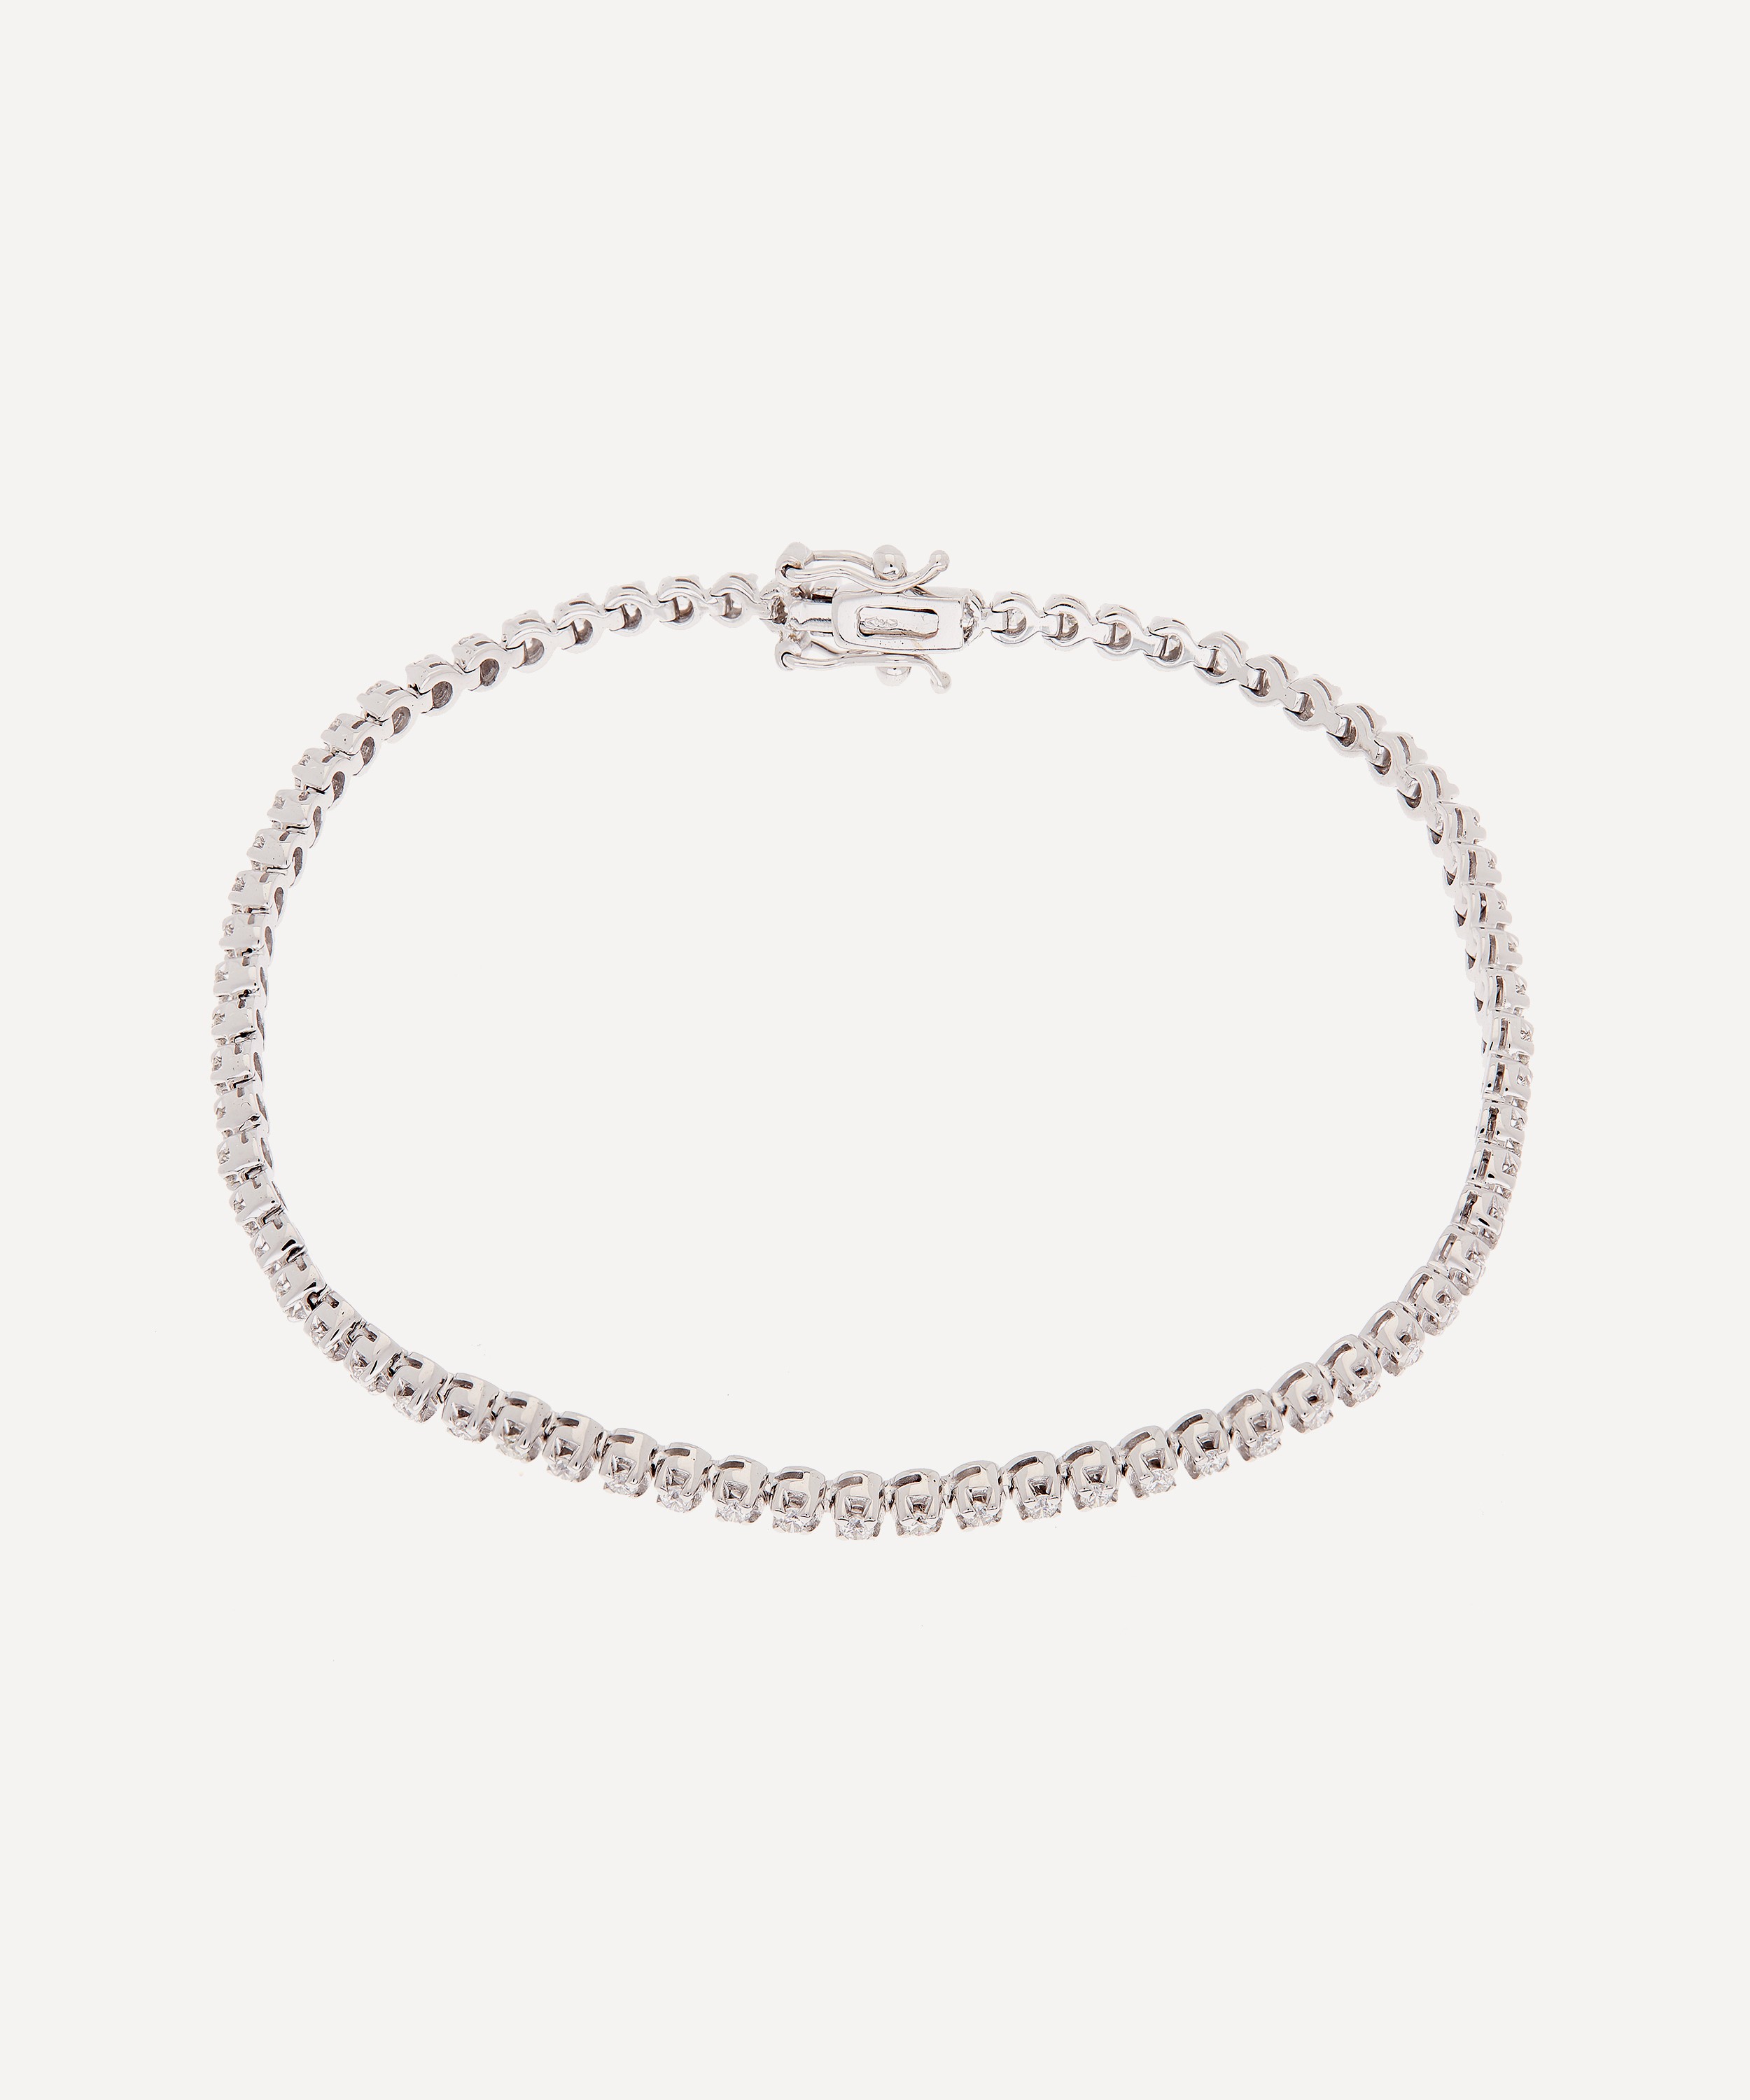 Kojis - 1ct Diamond Line Bracelet